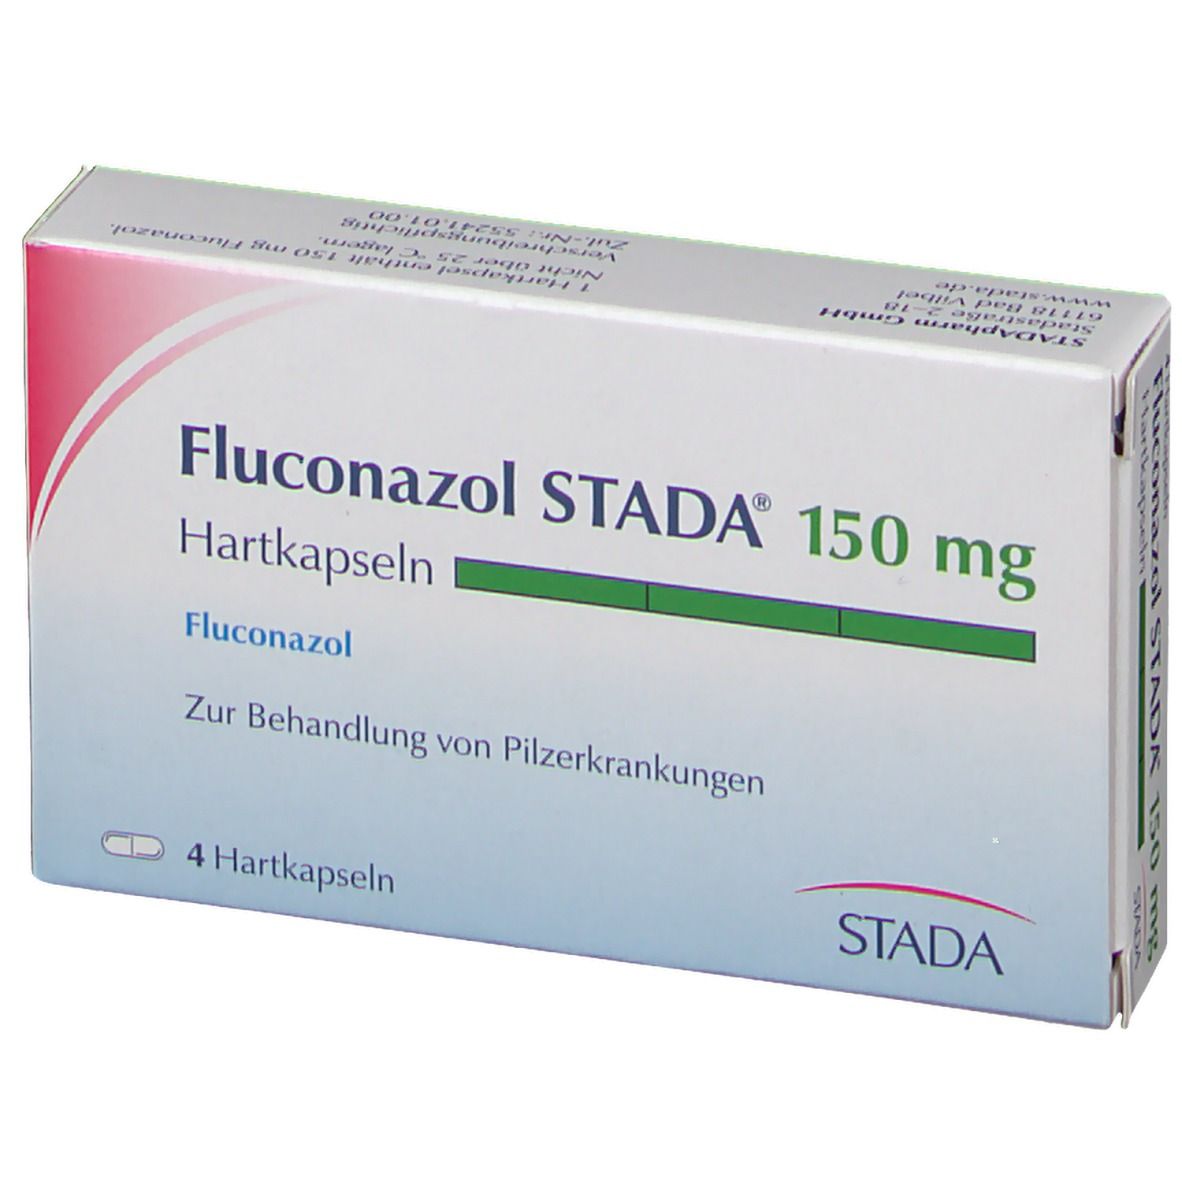 Fluconazol STADA® 150 mg